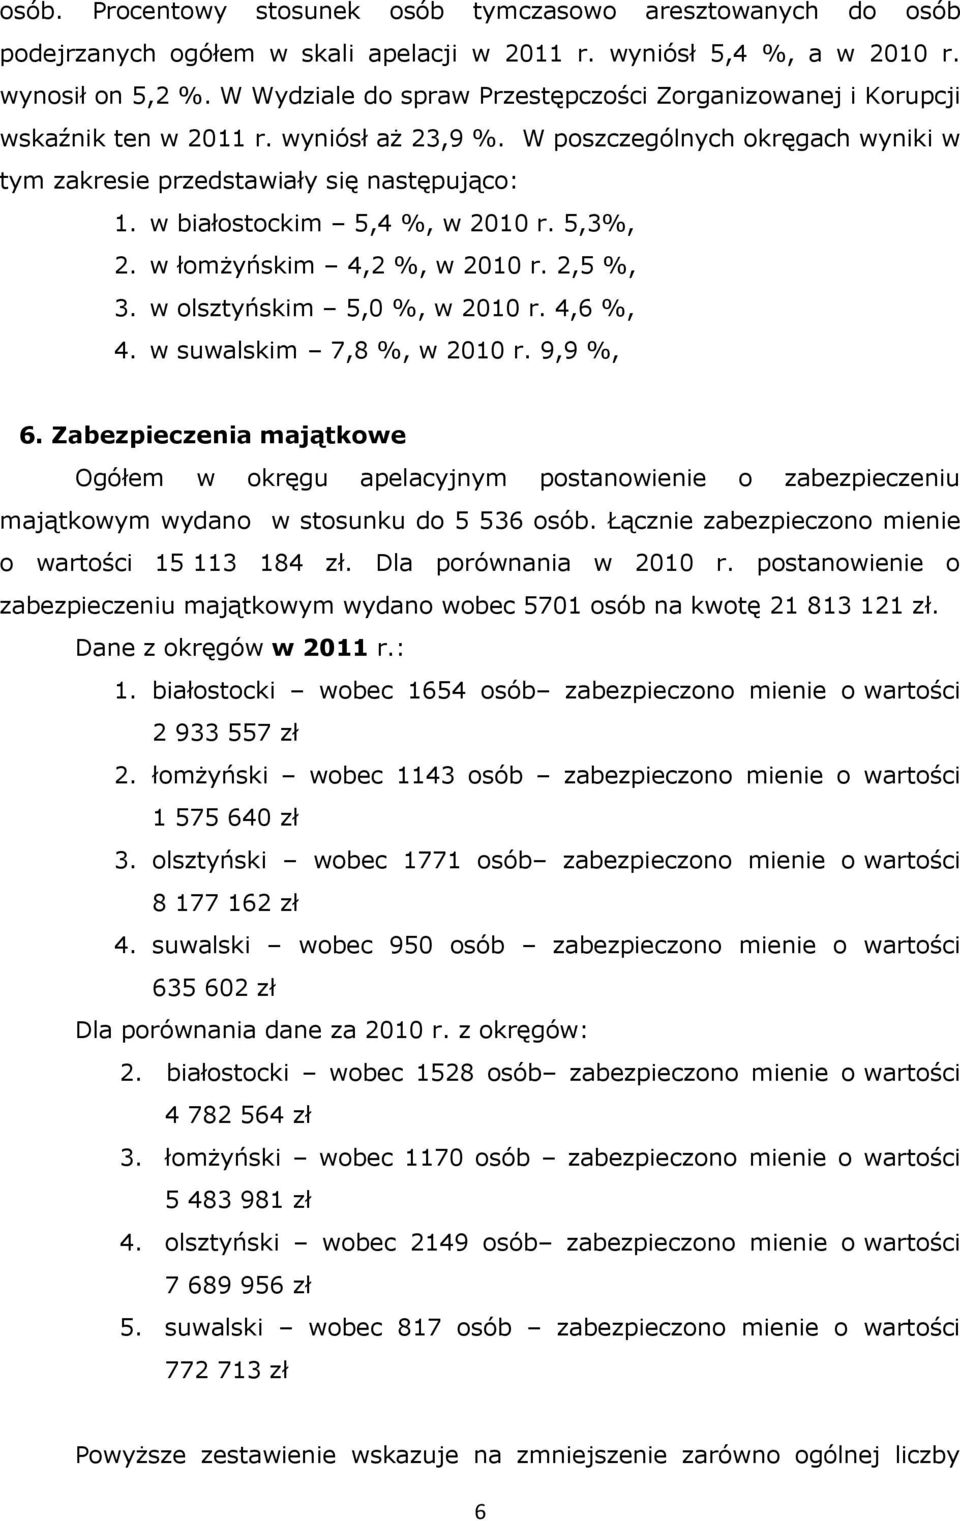 w białostockim 5,4 %, w 2010 r. 5,3%, 2. w łomżyńskim 4,2 %, w 2010 r. 2,5 %, 3. w olsztyńskim 5,0 %, w 2010 r. 4,6 %, 4. w suwalskim 7,8 %, w 2010 r. 9,9 %, 6.